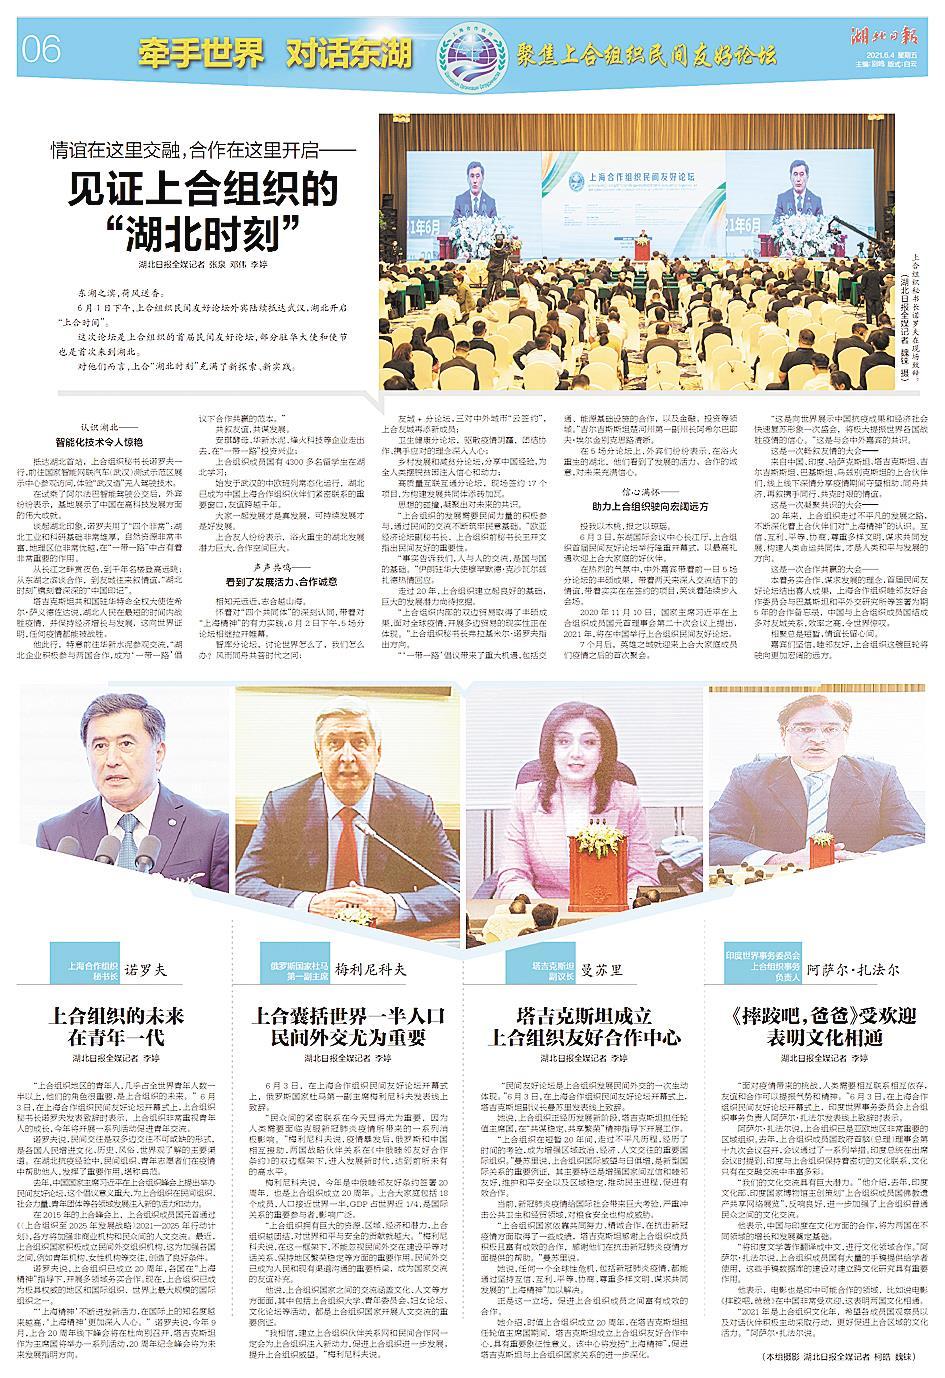 湖北国际“朋友圈”东湖对话 ——上海合作组织民间友好论坛全媒报道的幕后故事